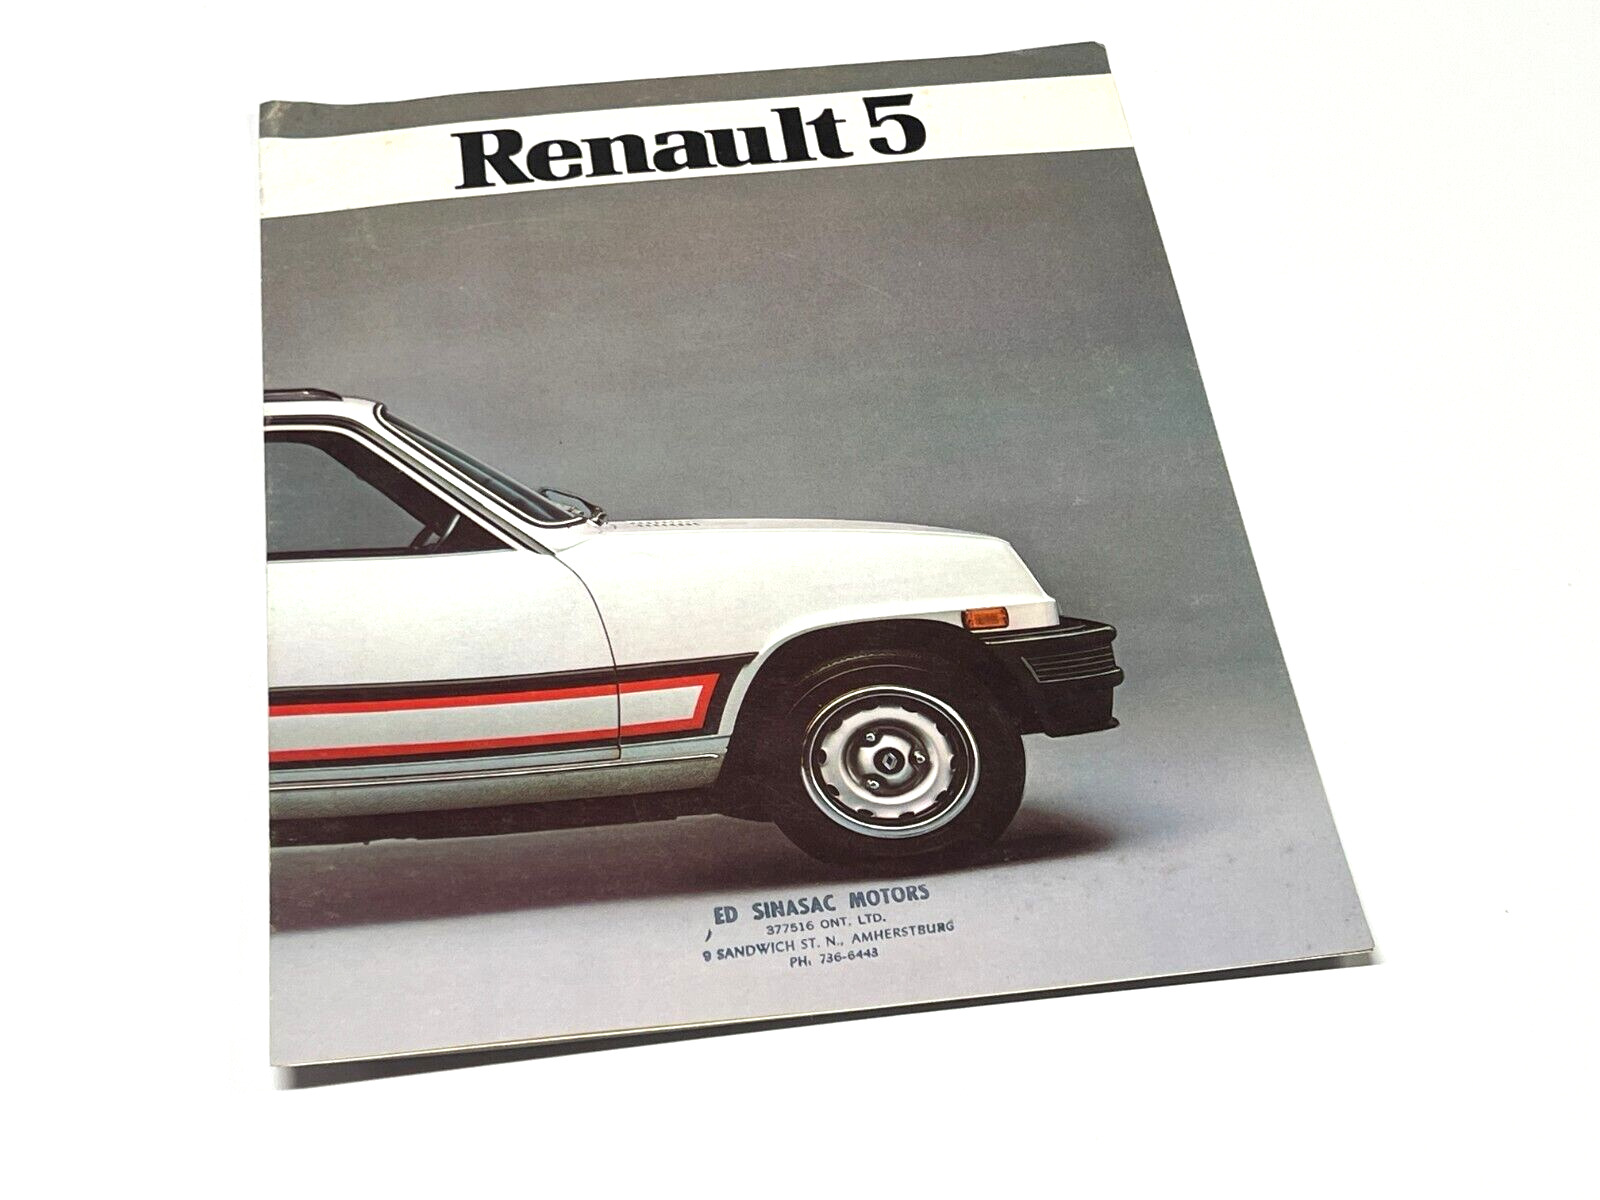 1984 Renault 5 Brochure